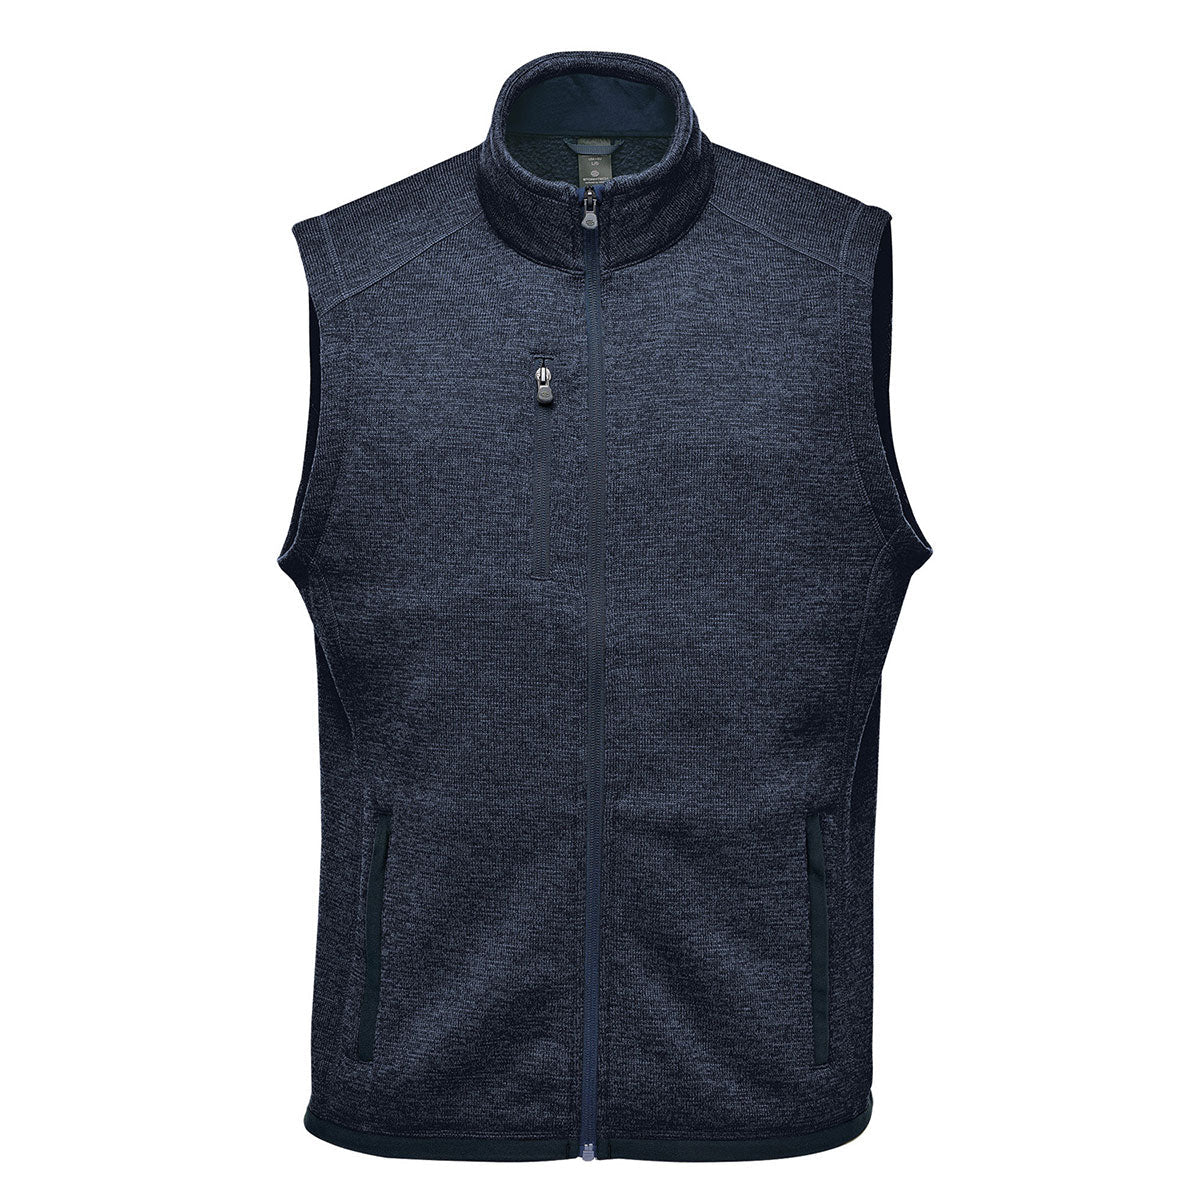 Men's Avalante Full Zip Fleece Vest - Stormtech USA Retail